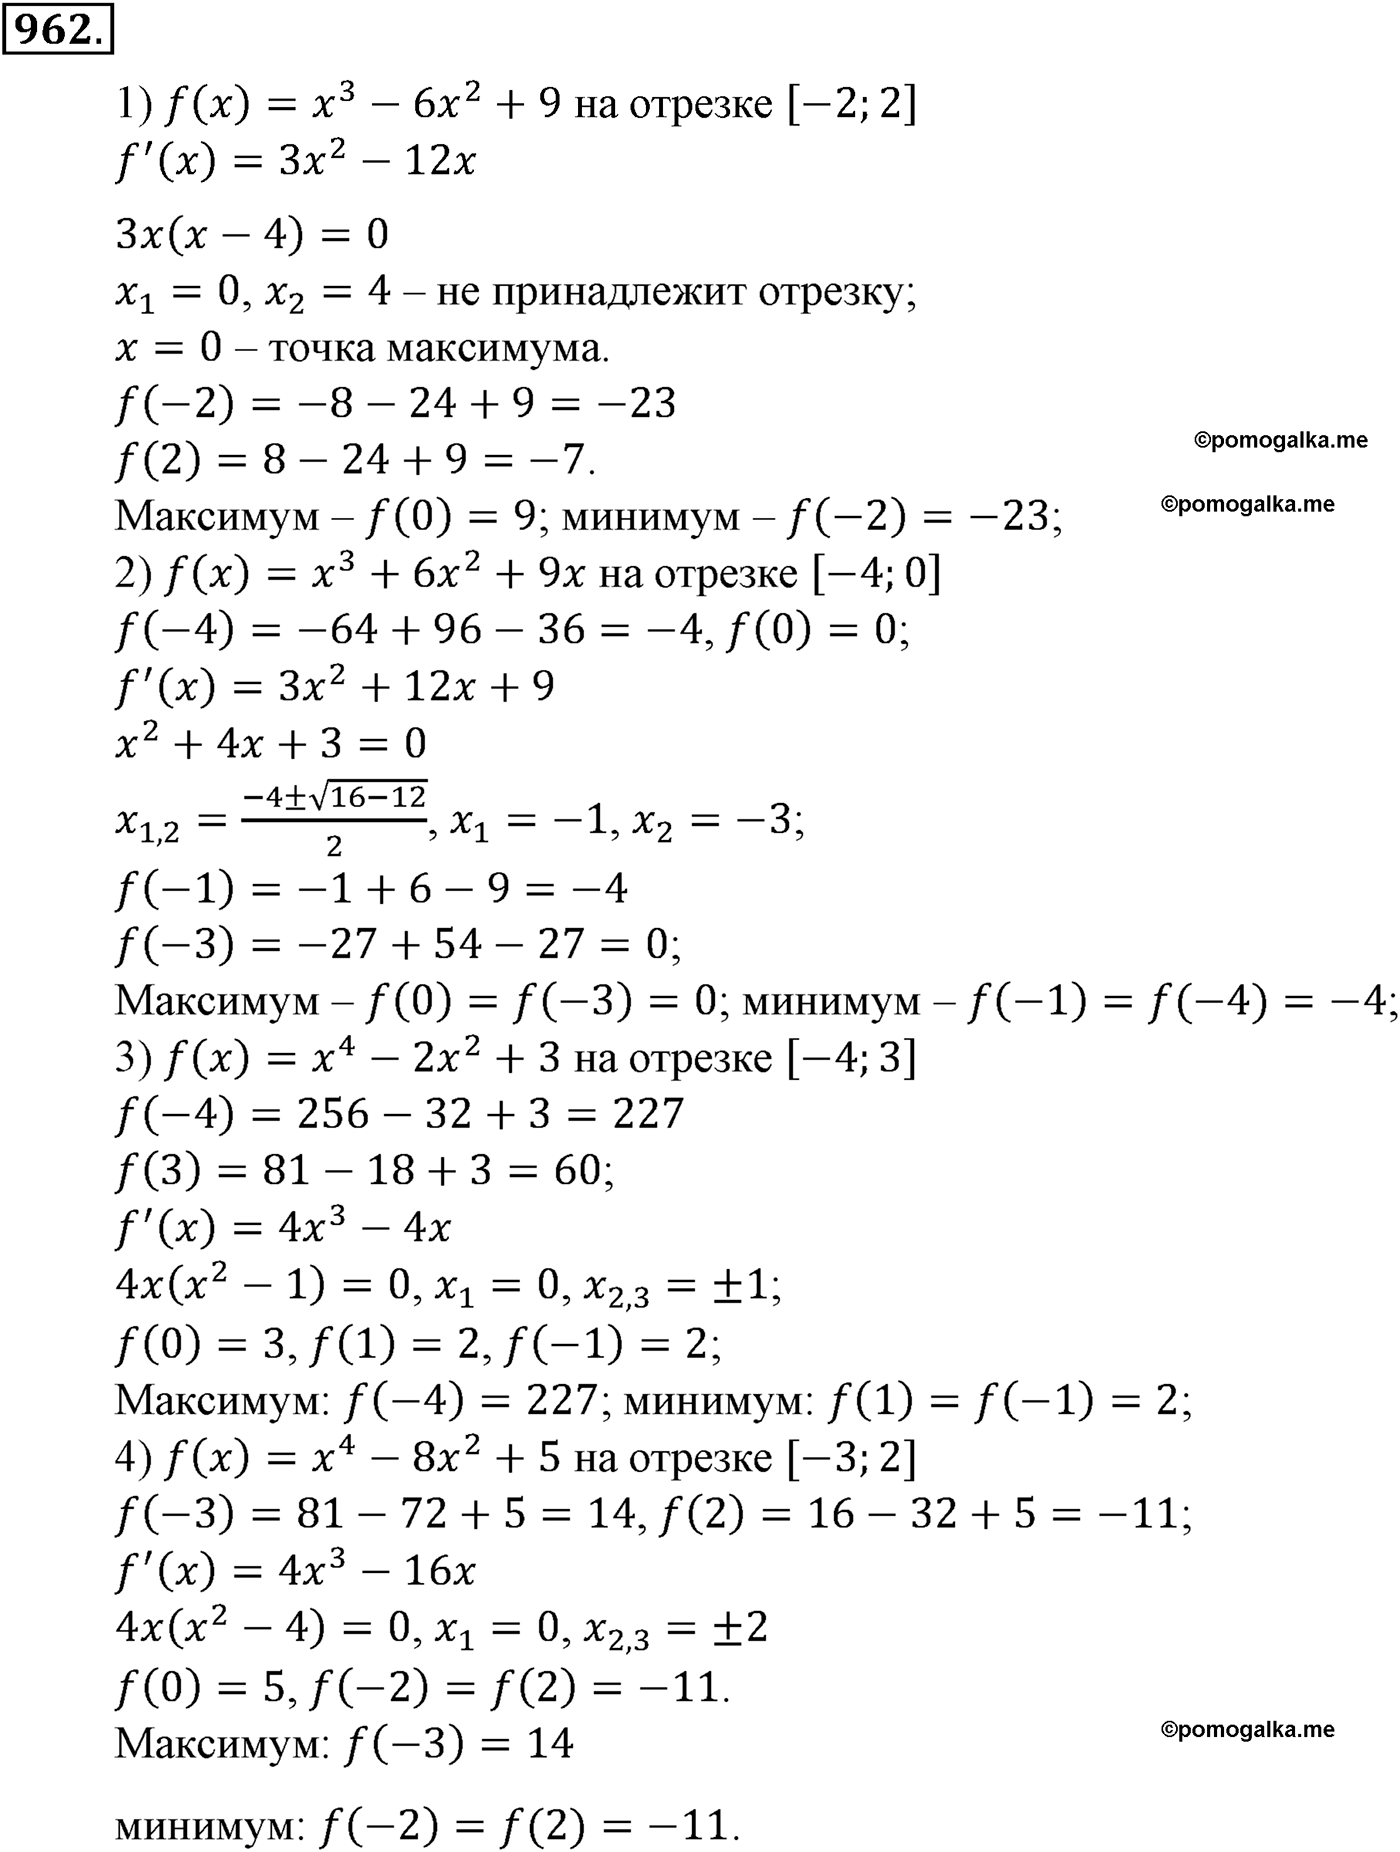 разбор задачи №962 по алгебре за 10-11 класс из учебника Алимова, Колягина